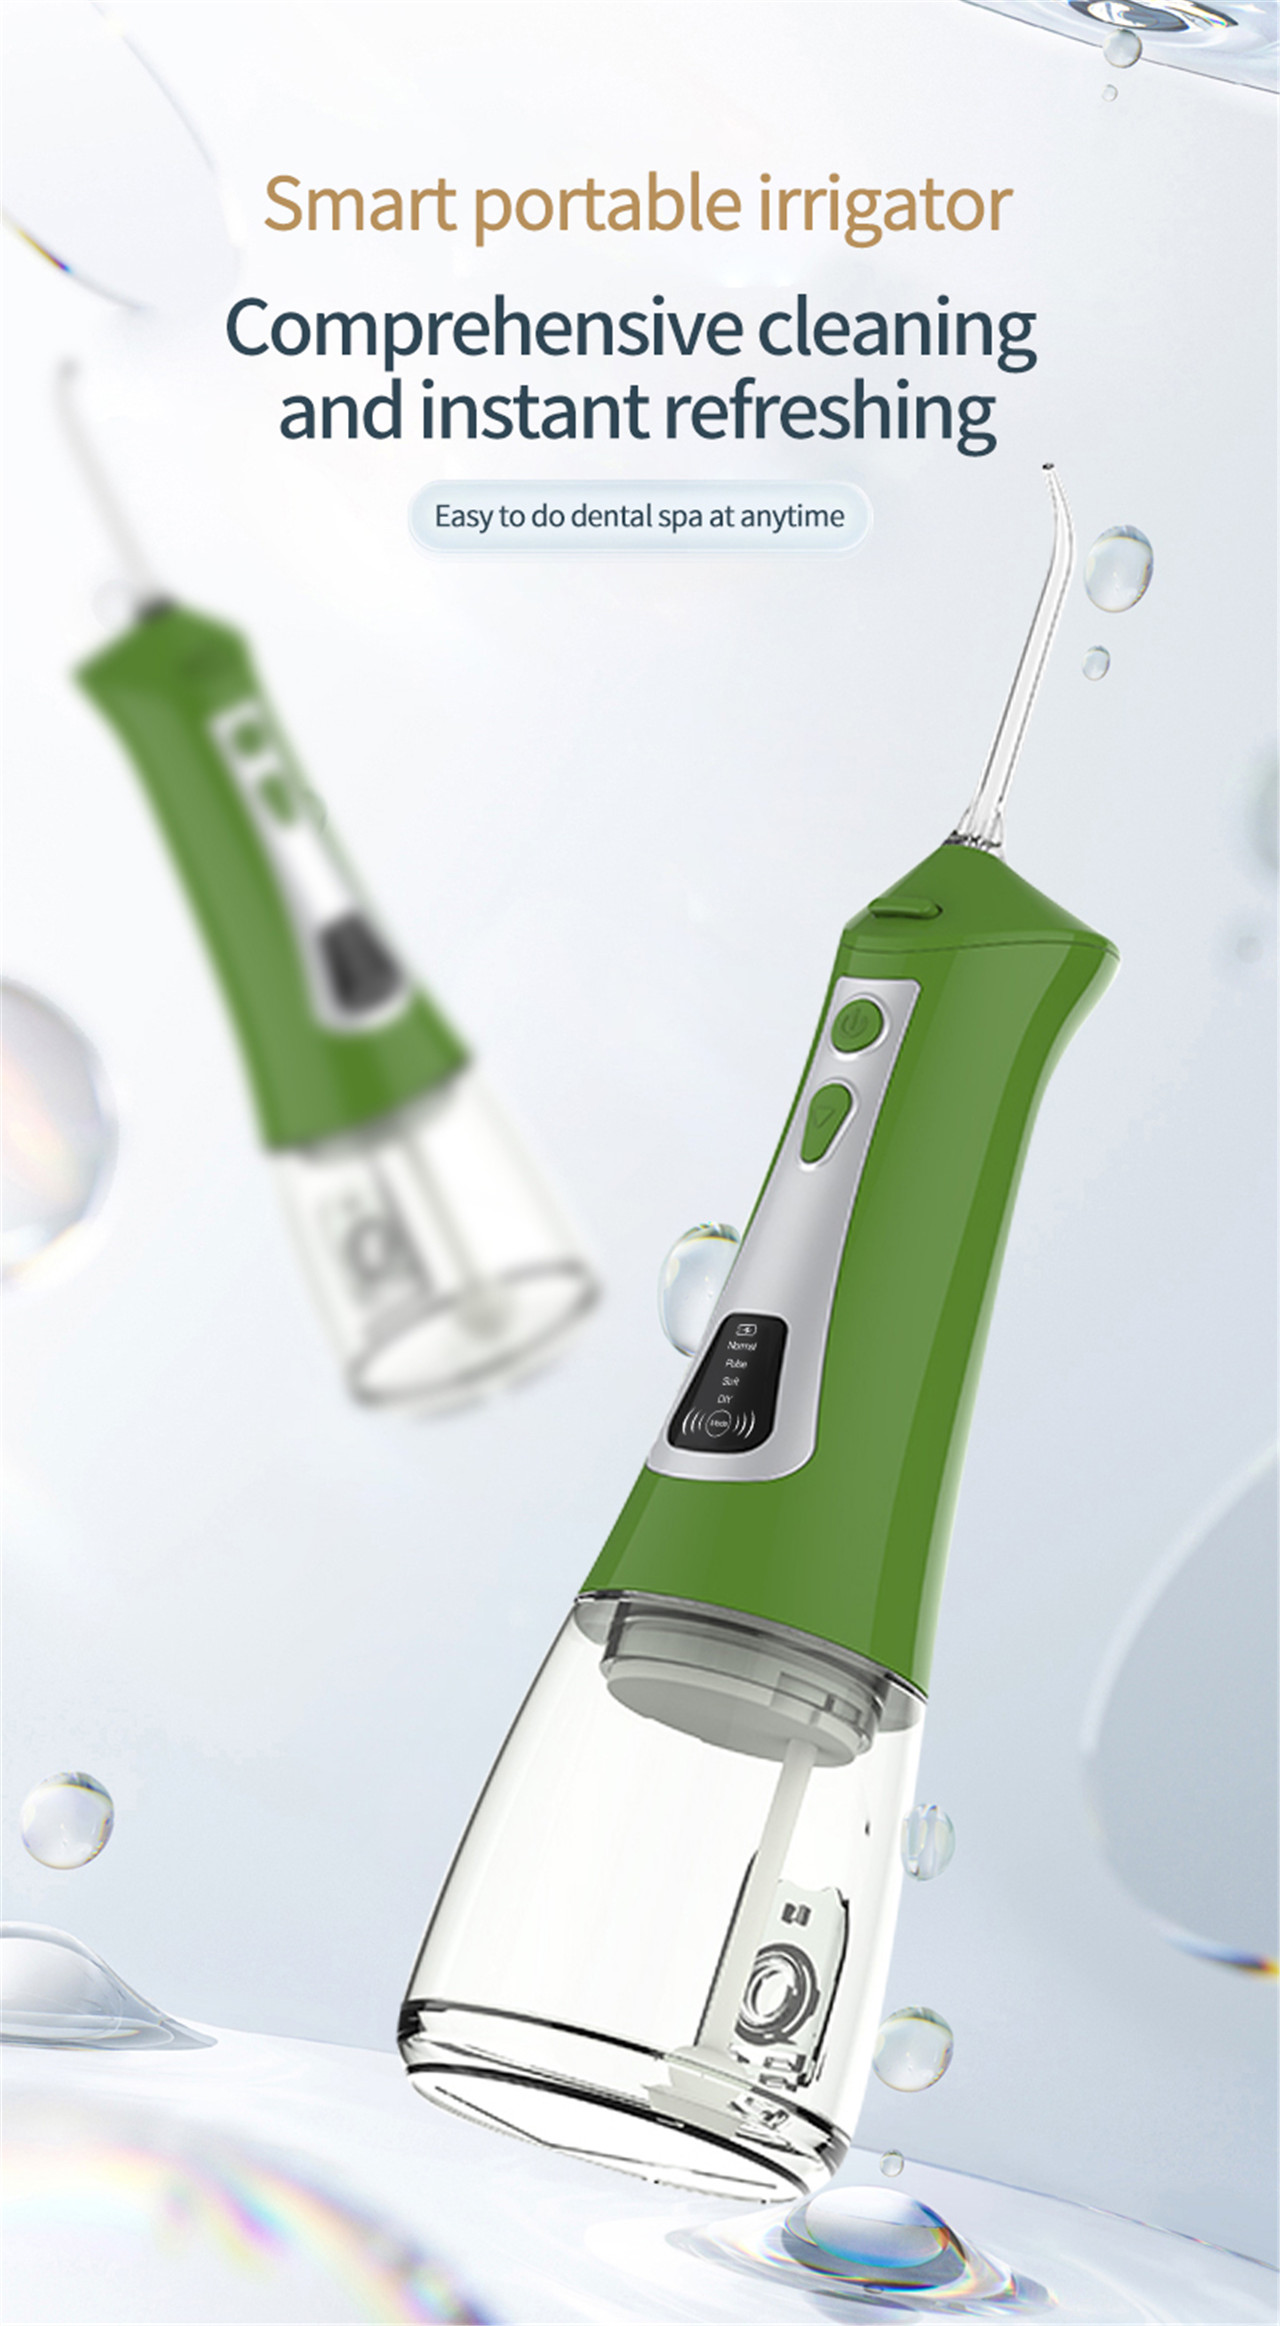 OLED-skerm mondbesproeier waterplukker vir tande bleek (1)